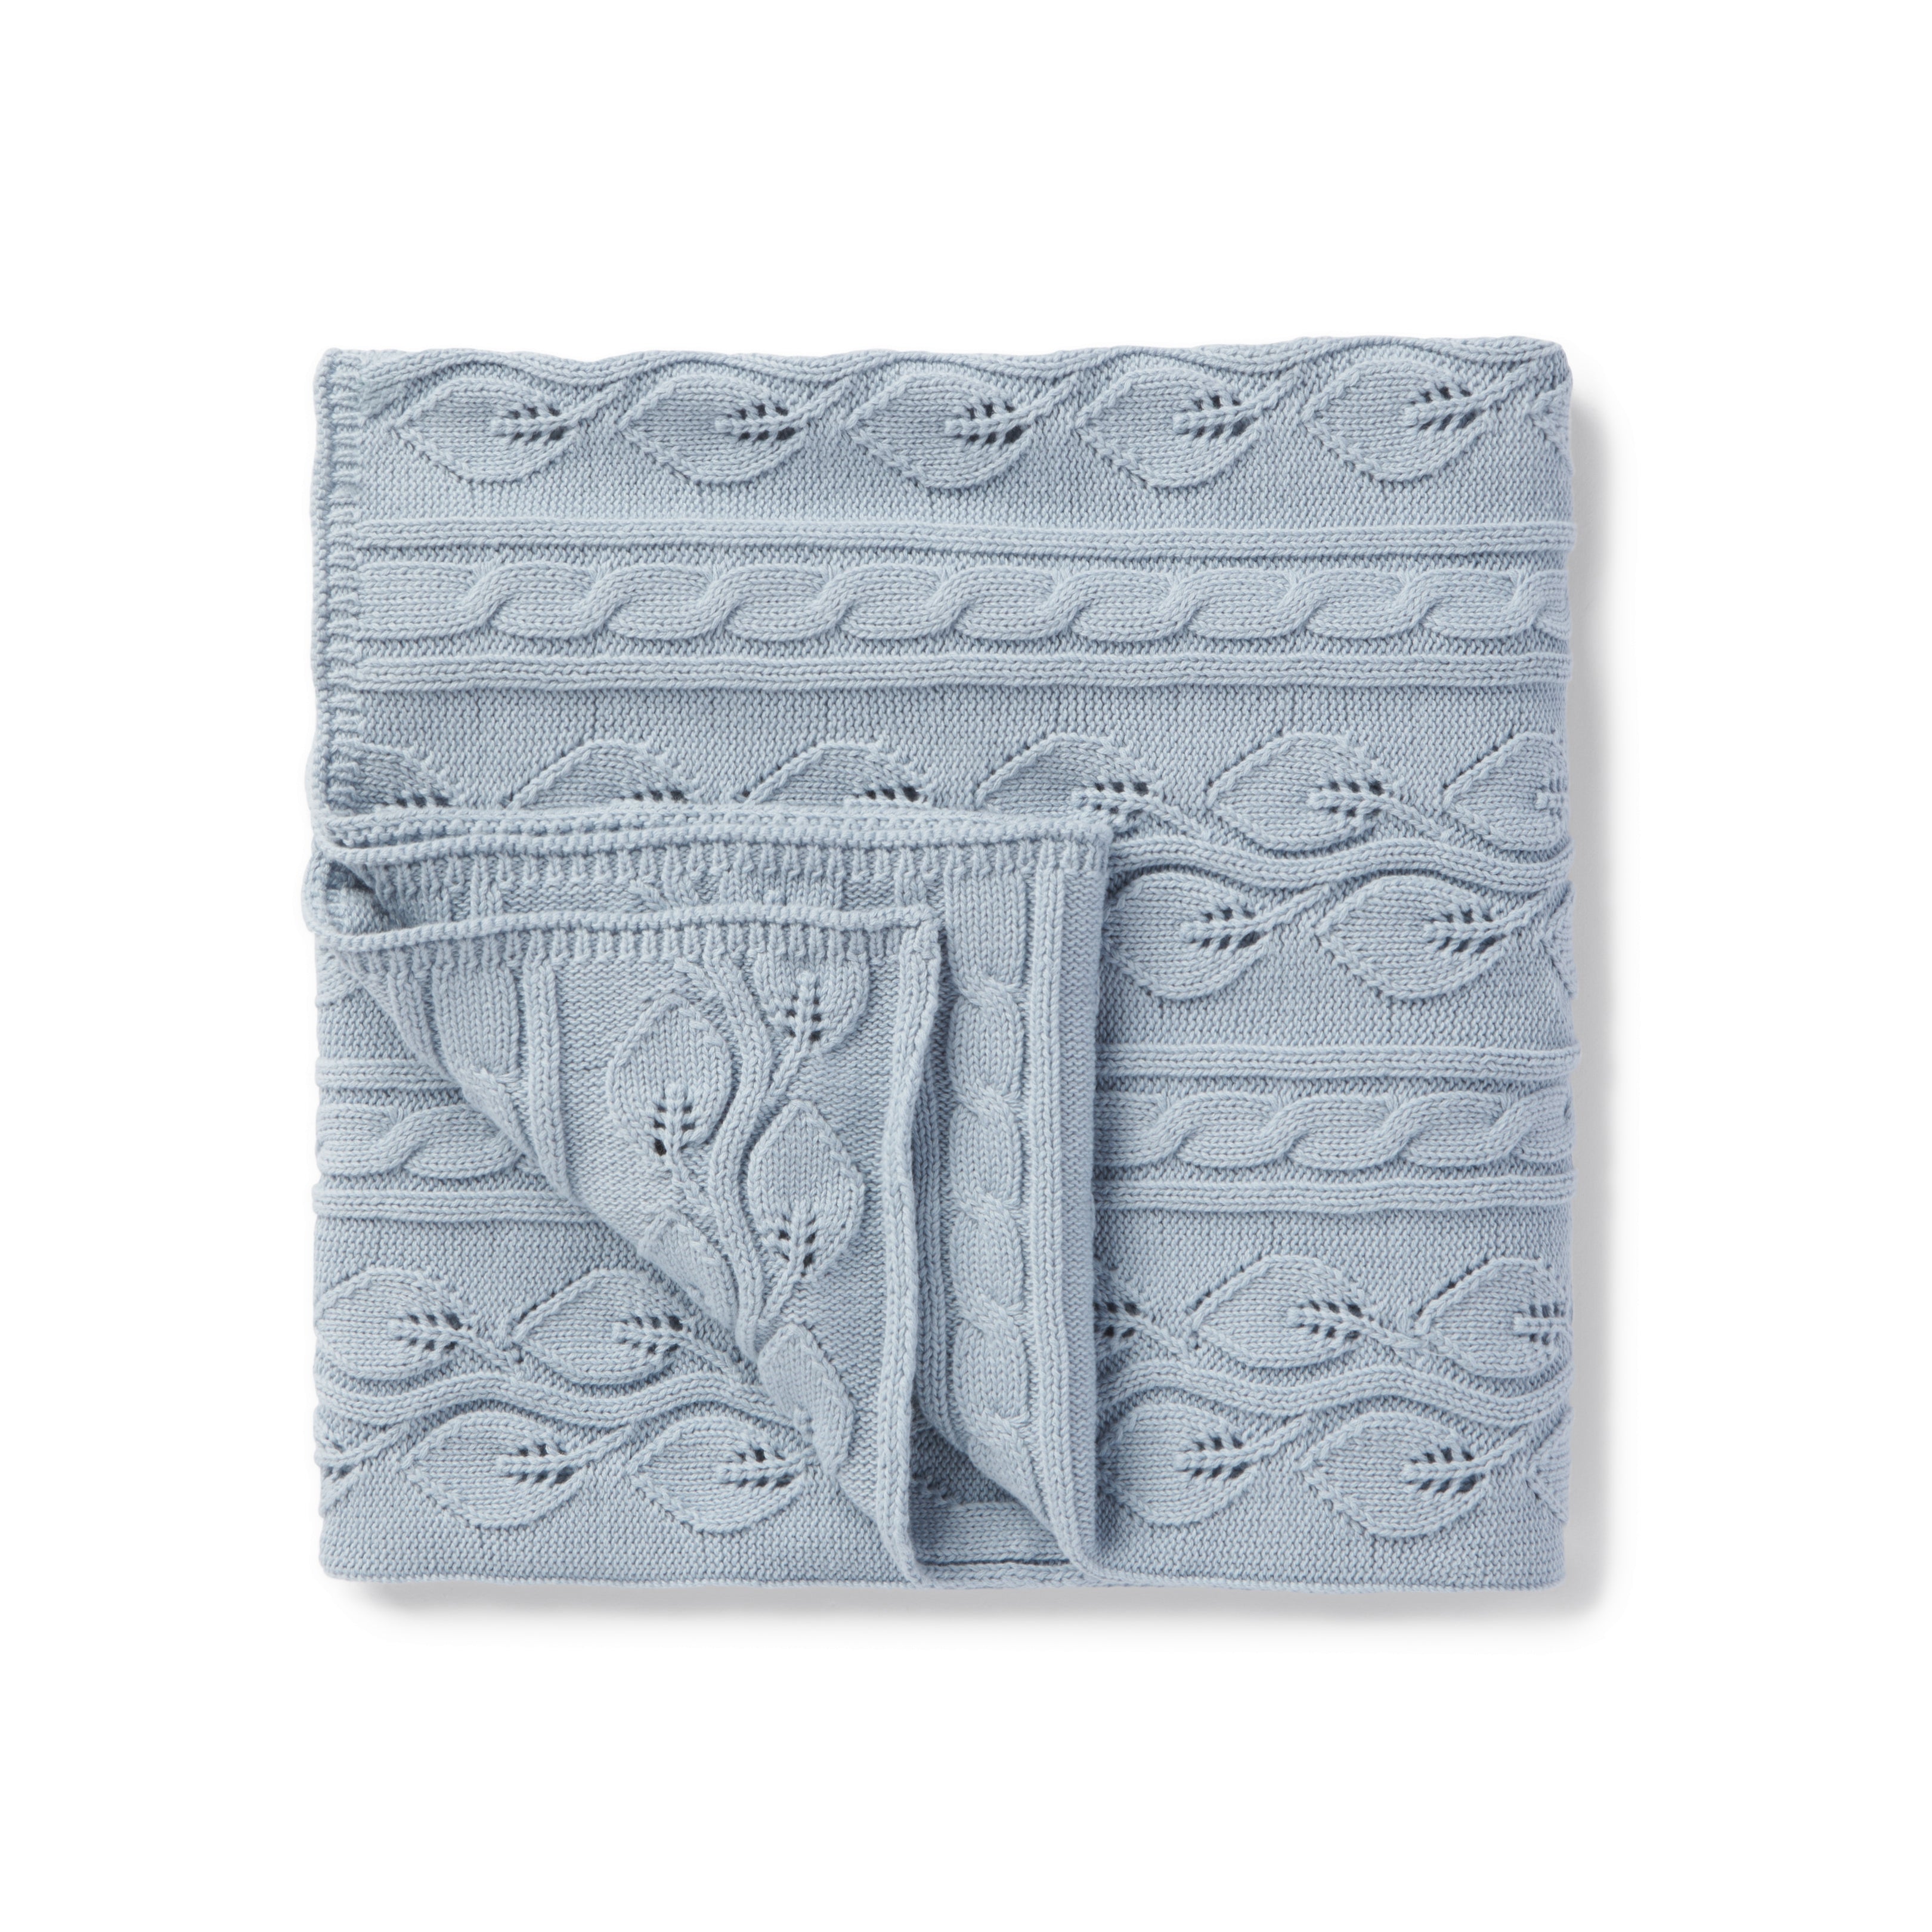 Aster & Oak Cable Knit Blanket - Fog Blue